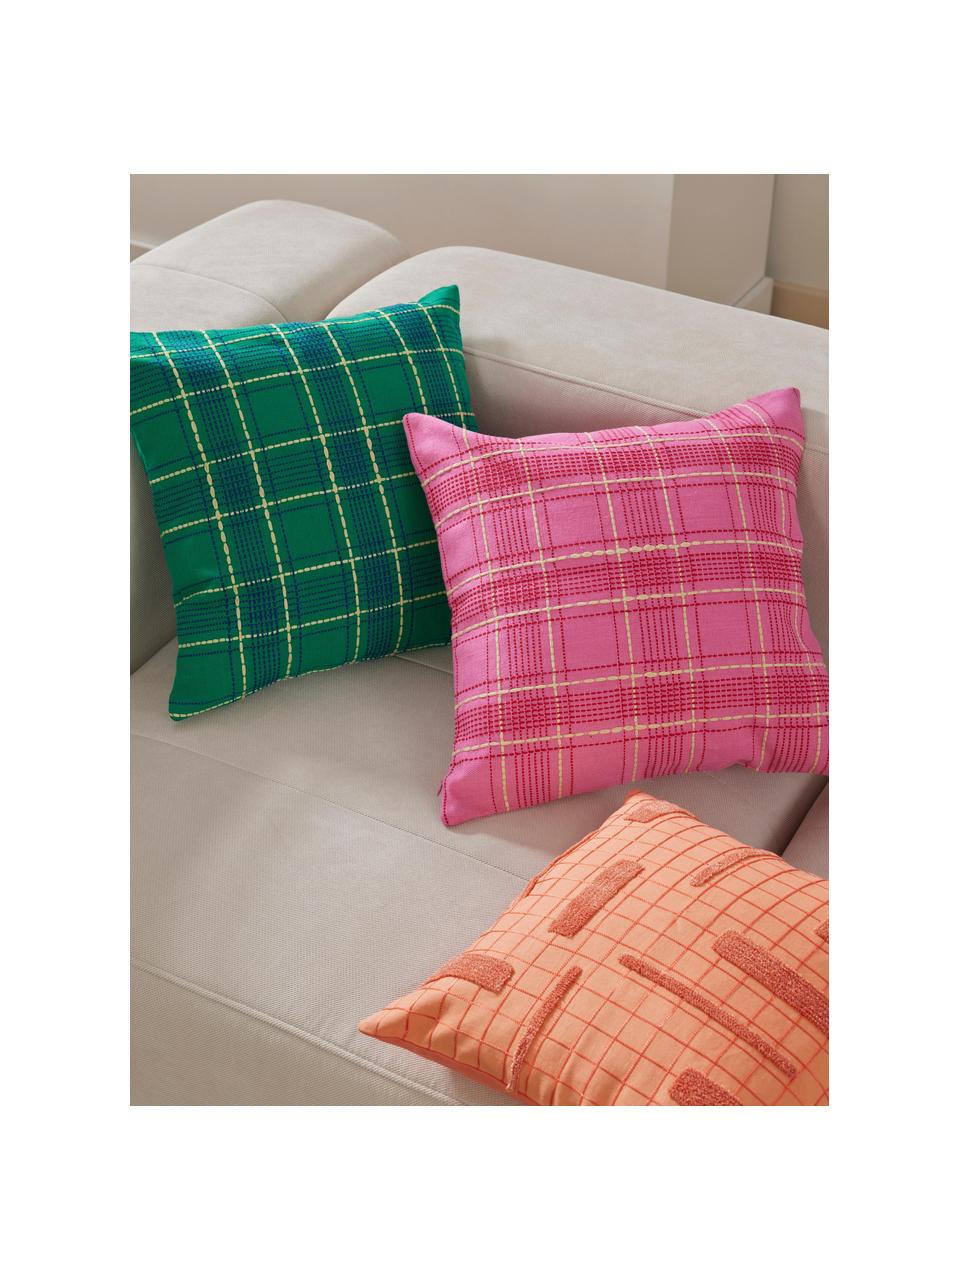 Poszewka na poduszkę z bawełny Orla, 100% bawełna, Różowy, S 45 x D 45 cm